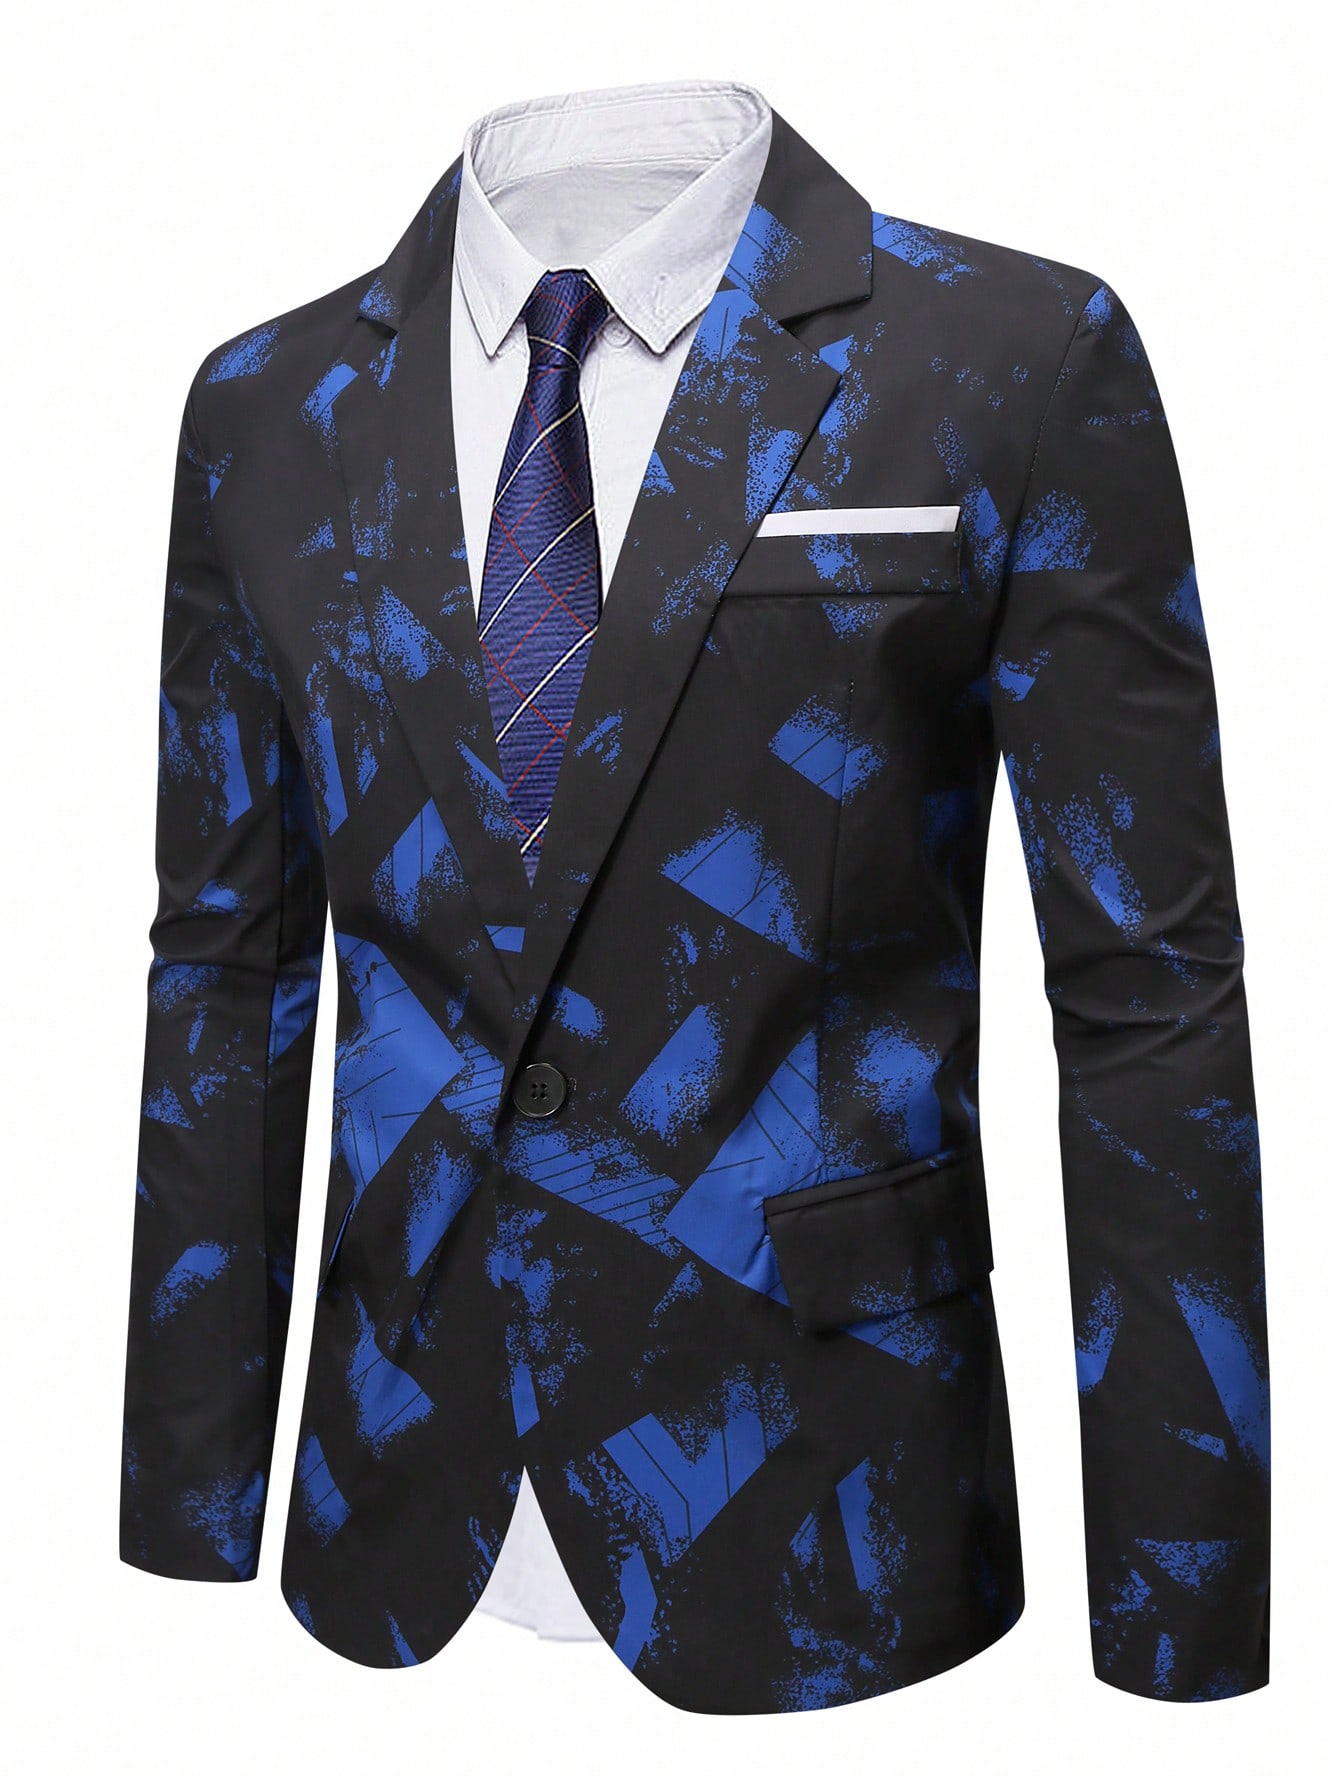 Мужской пиджак с принтом тай-дай Manfinity Mode больших размеров, многоцветный лонгслив мужской синий тай дай xl